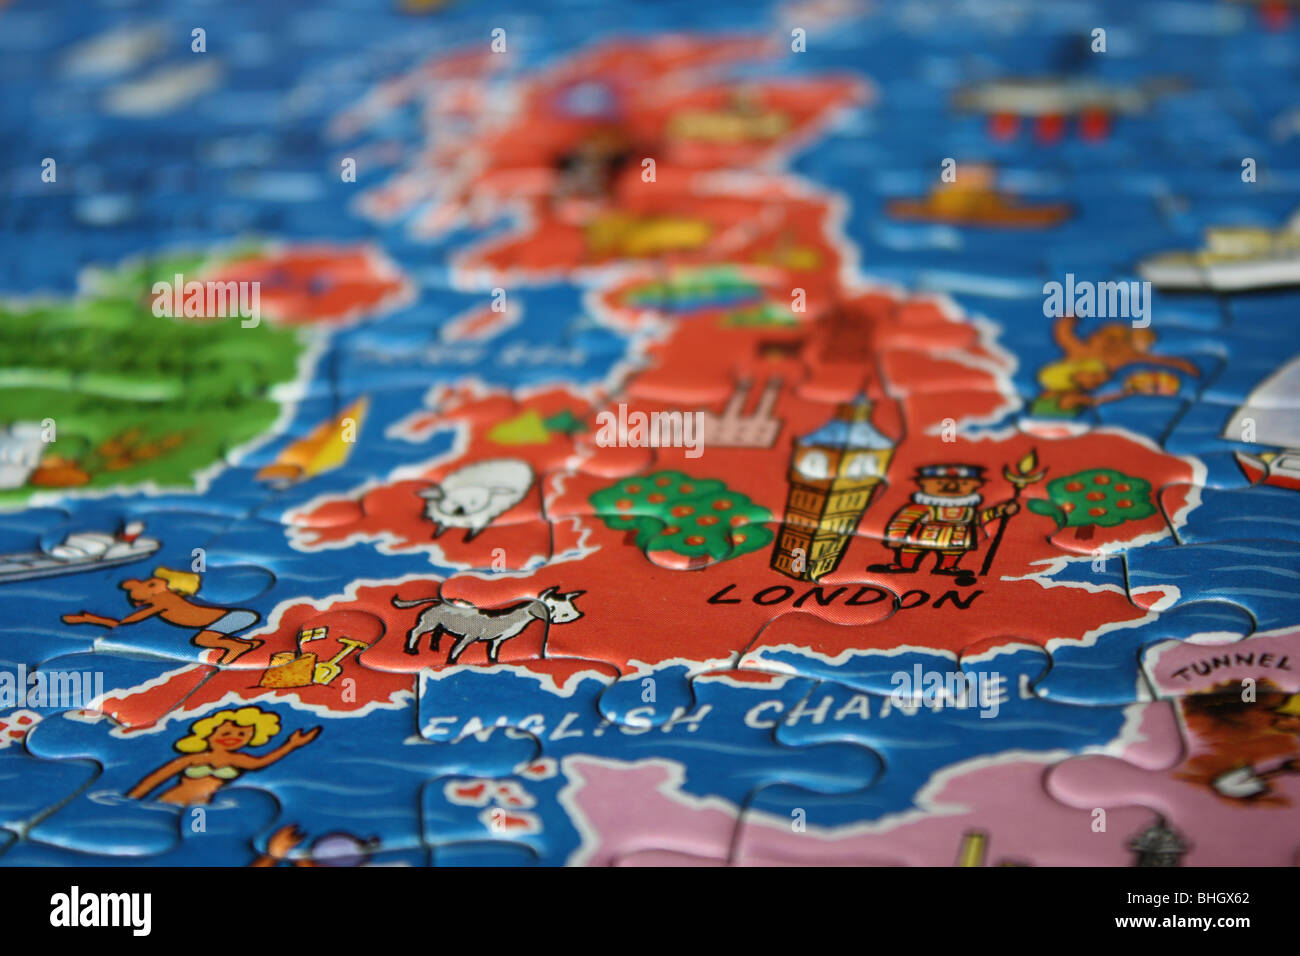 jigsaw image of england and UK Stock Photo